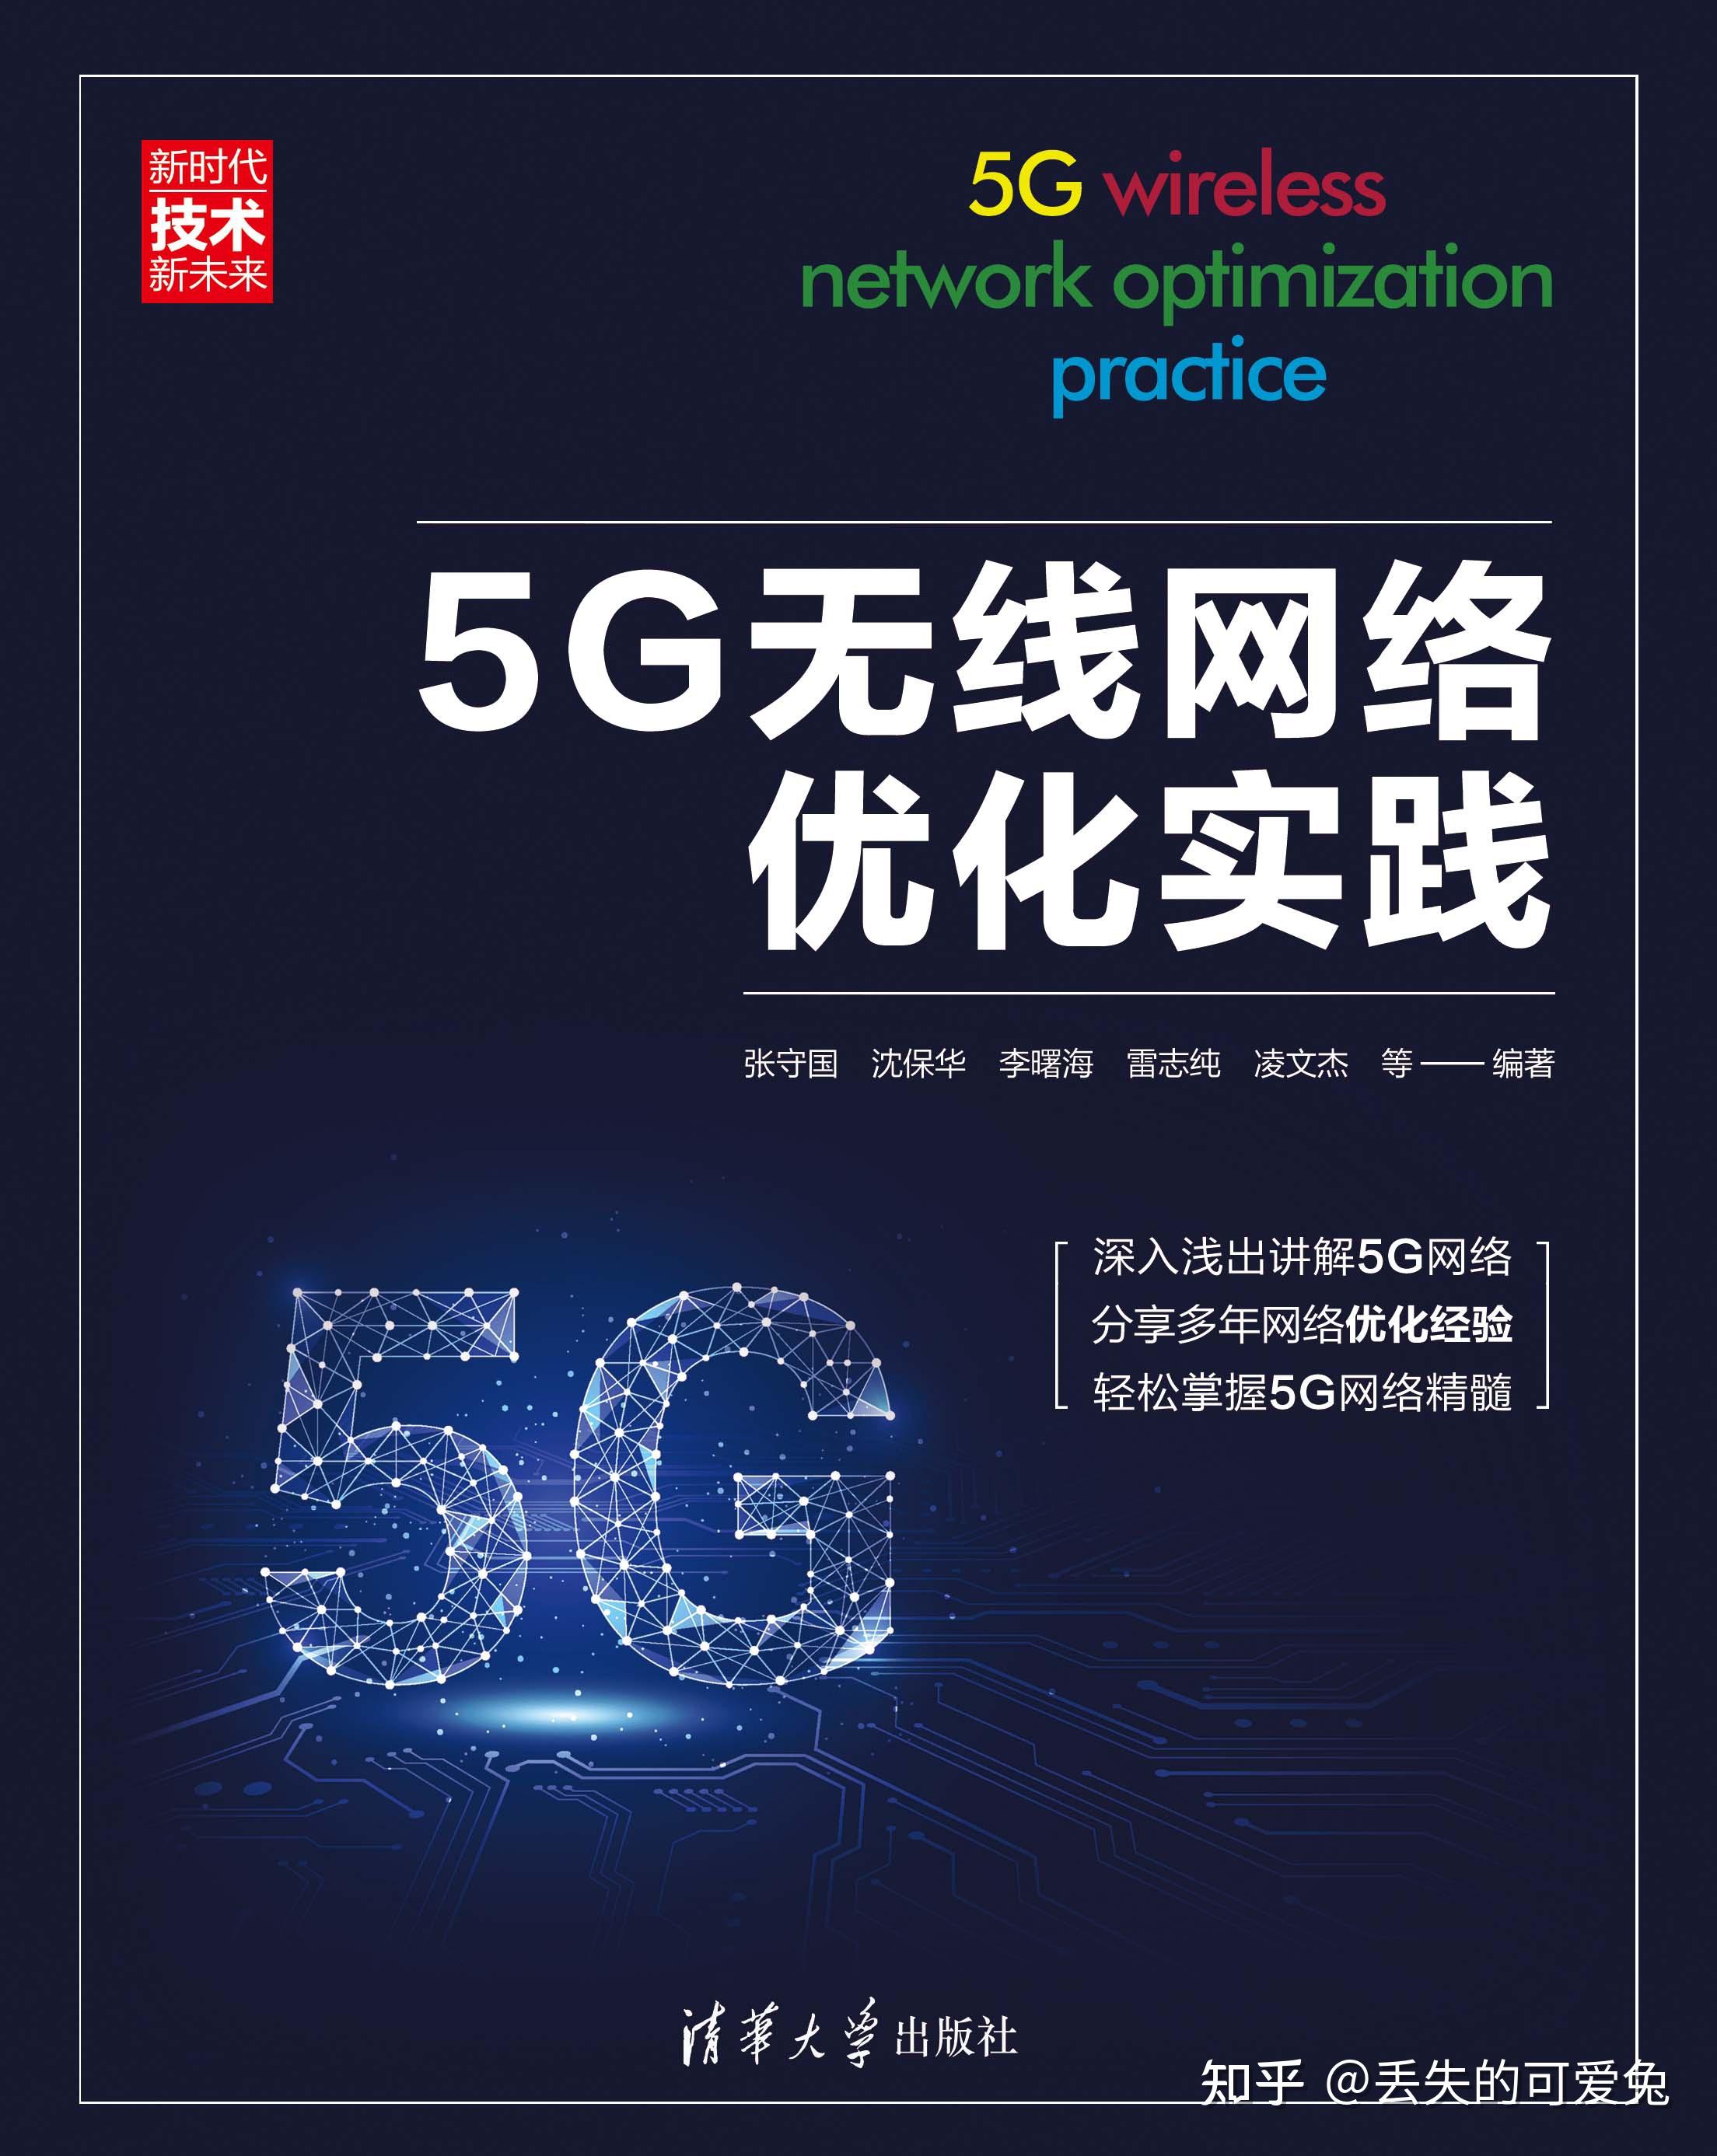 5G 网络全覆盖，改变生活方式，提升便捷度与效率  第1张